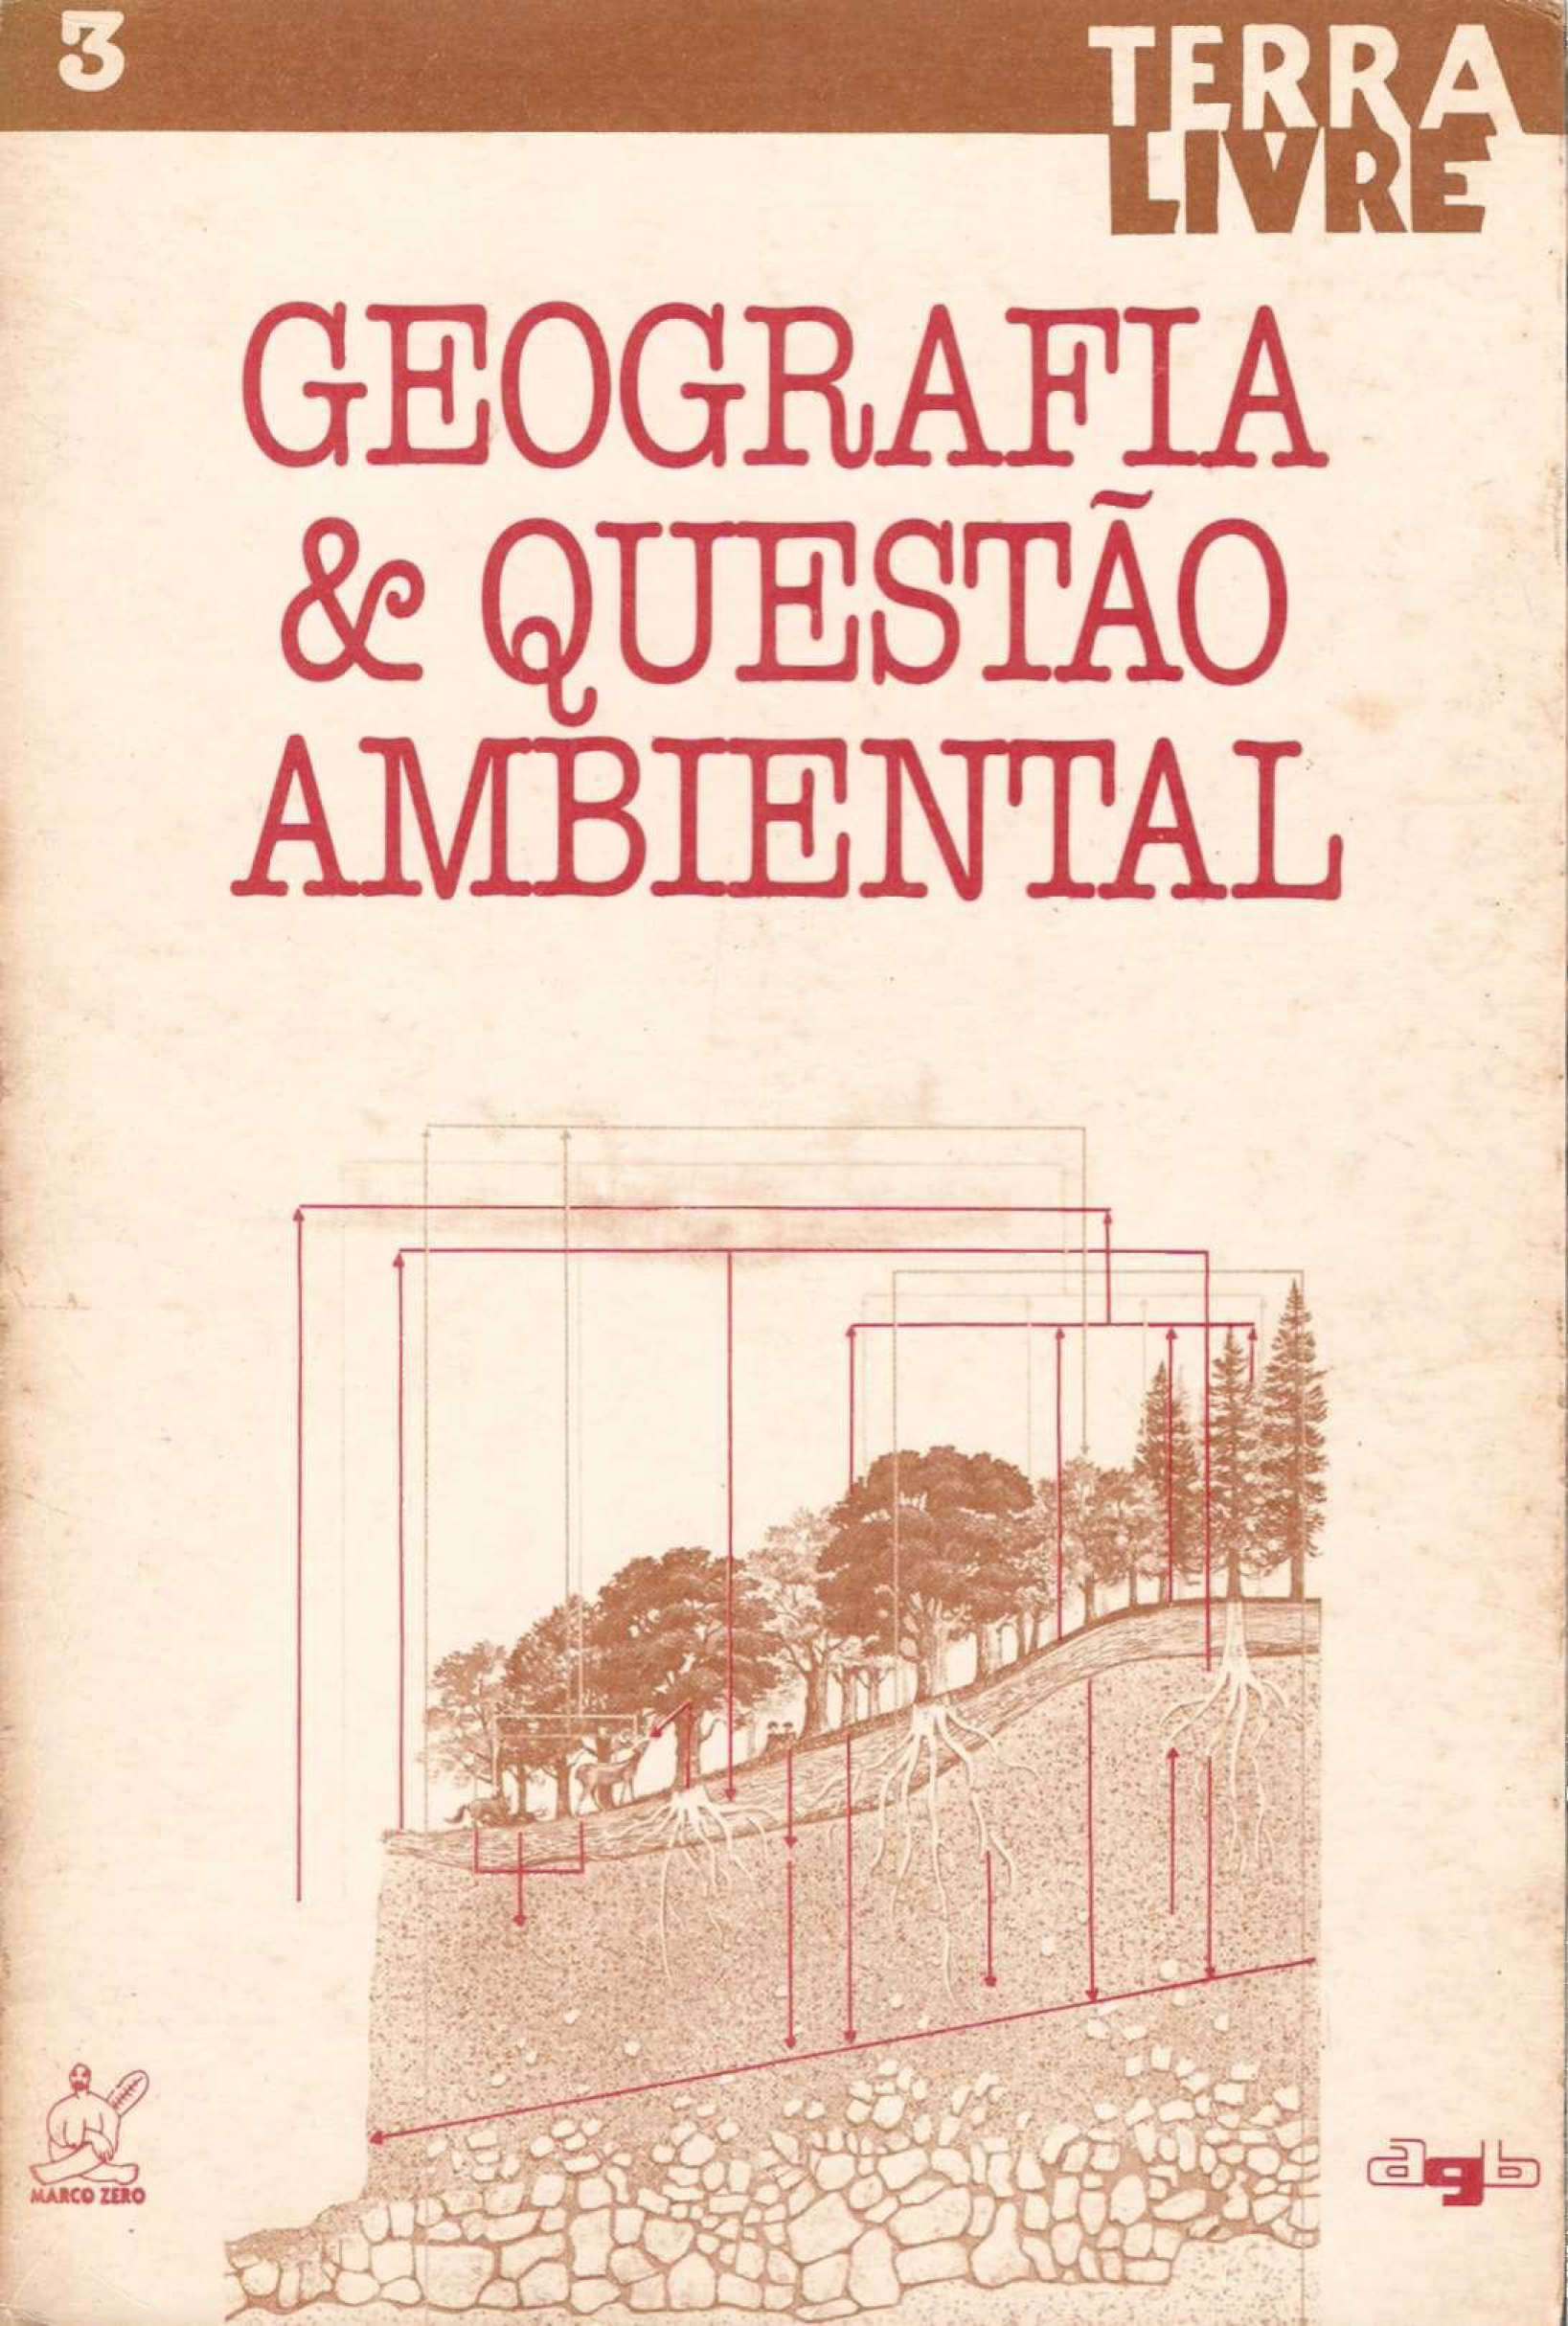 					View No. 3 (1988): GEOGRAFIA E QUESTÃO AMBIENTAL
				